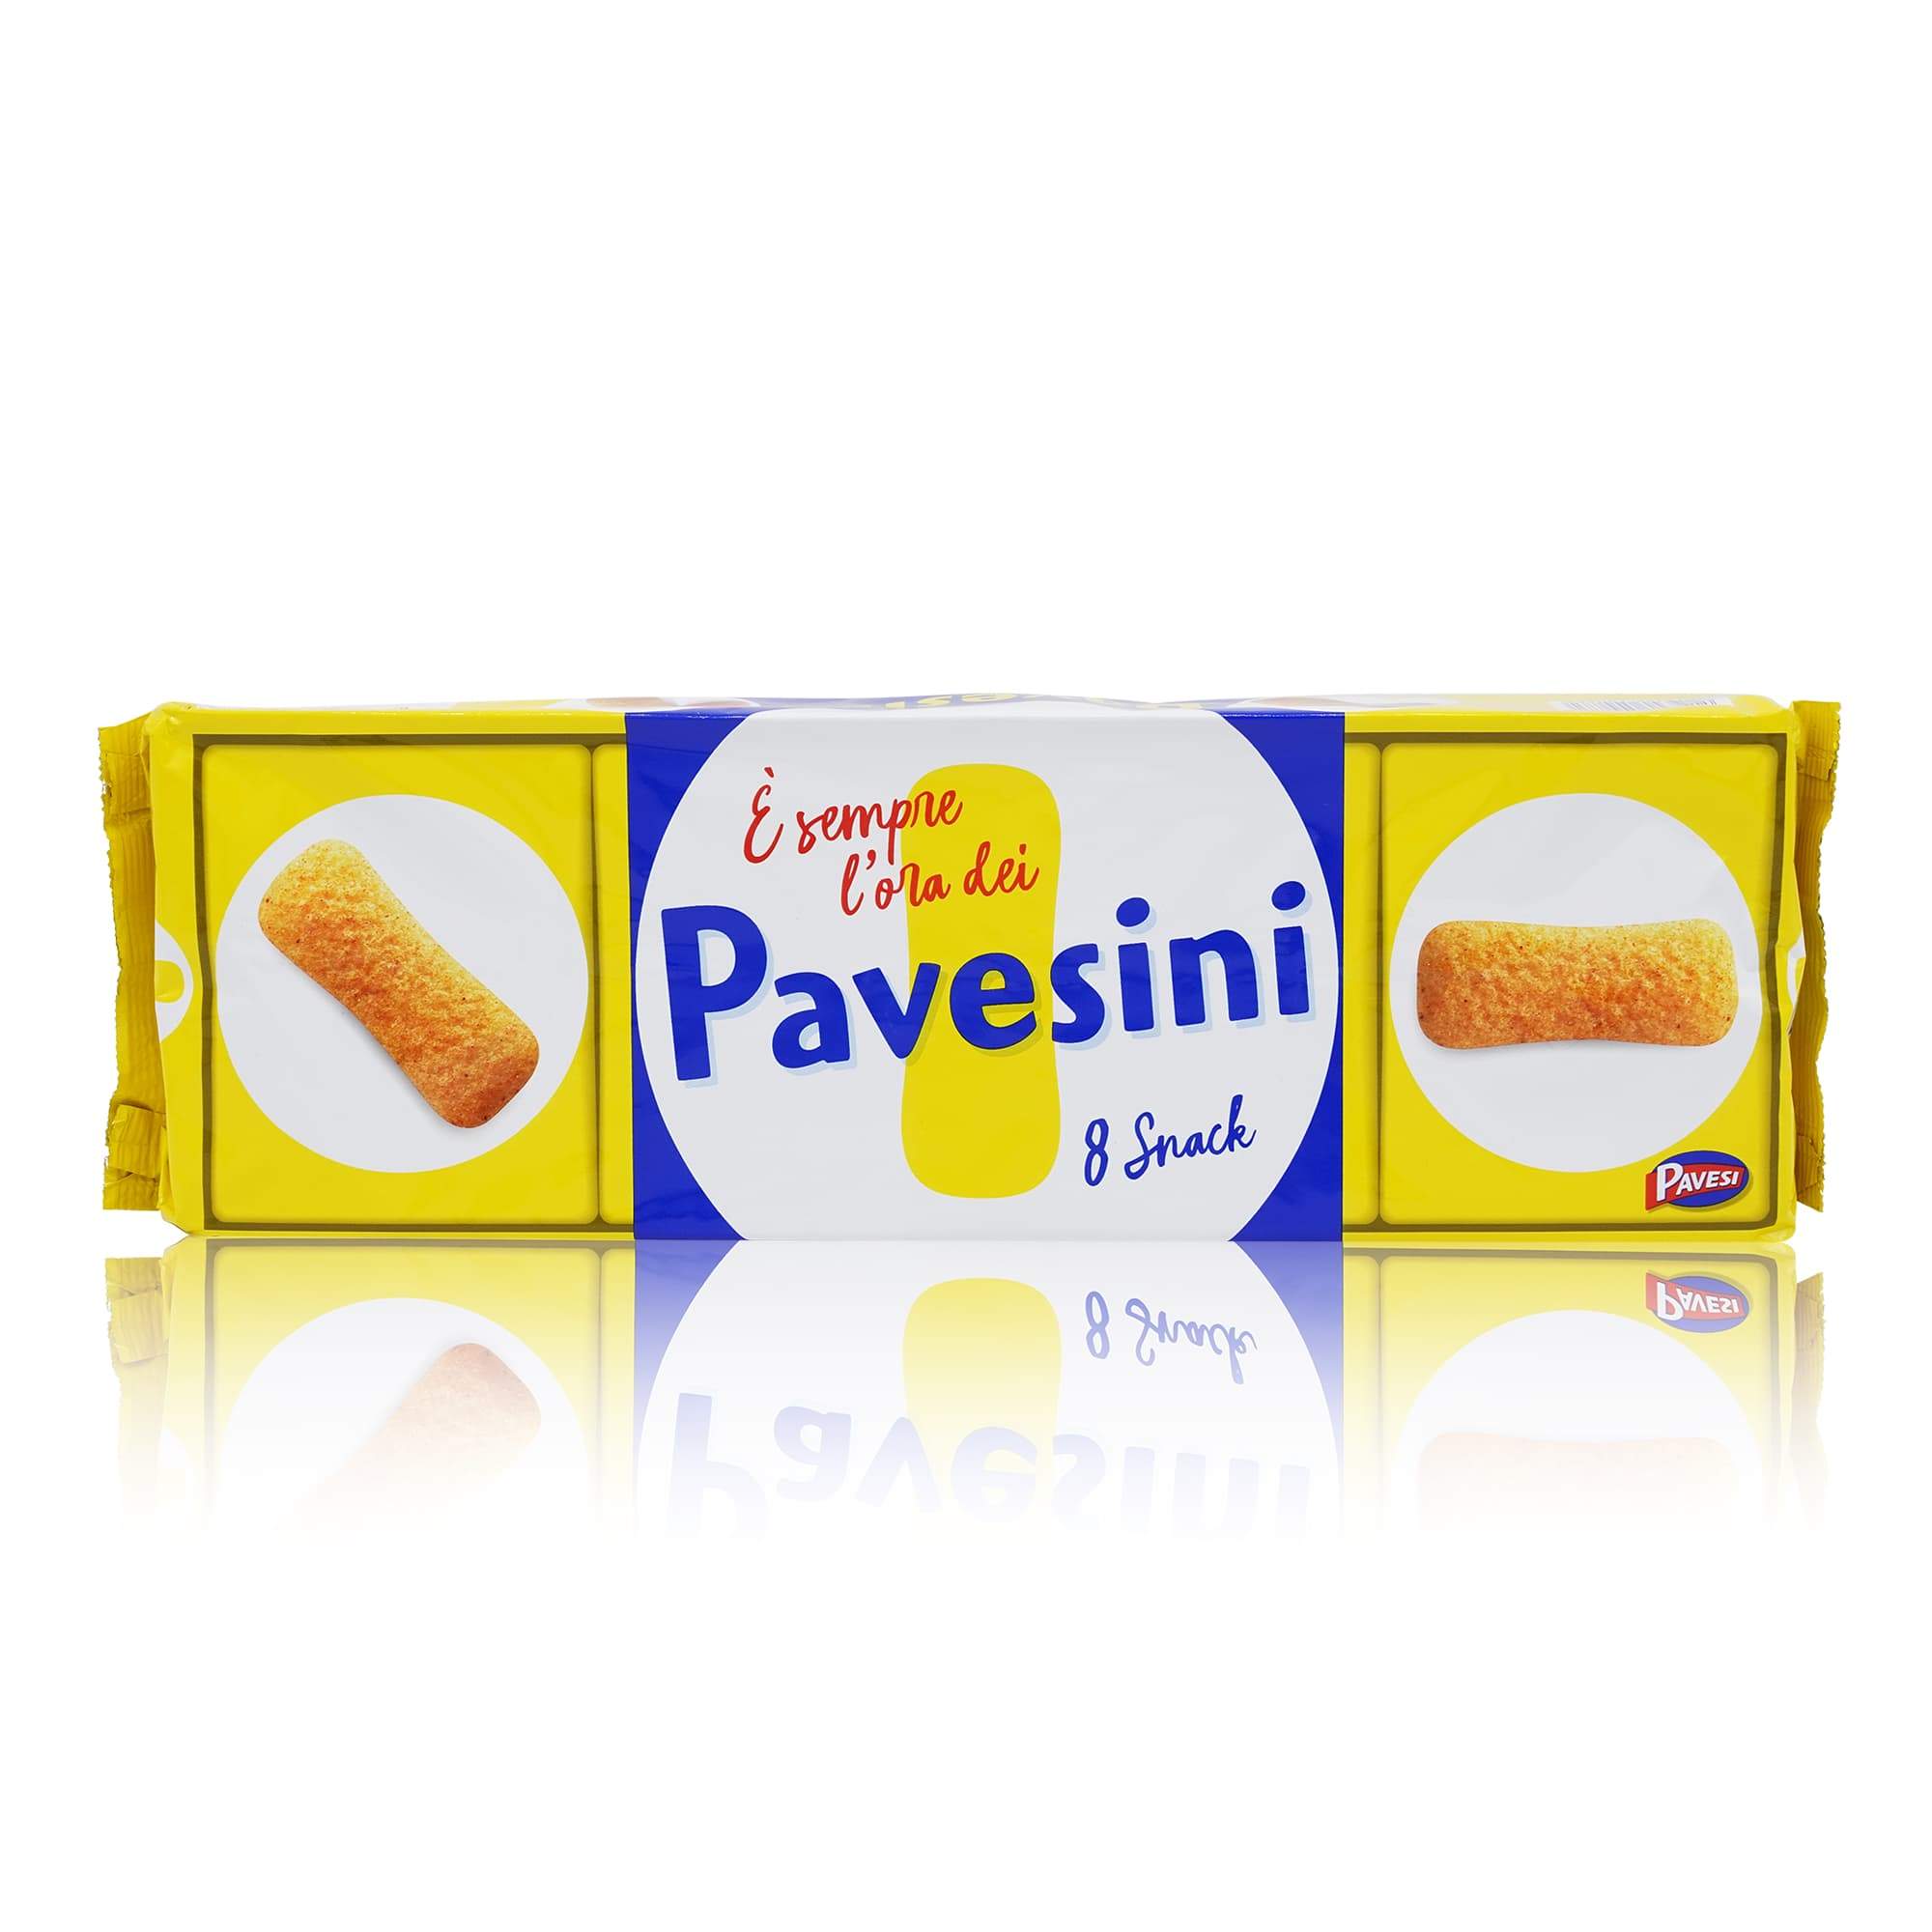 Pavesi Biscotti Pavesini – Pavesini Kekse - 0,200kg